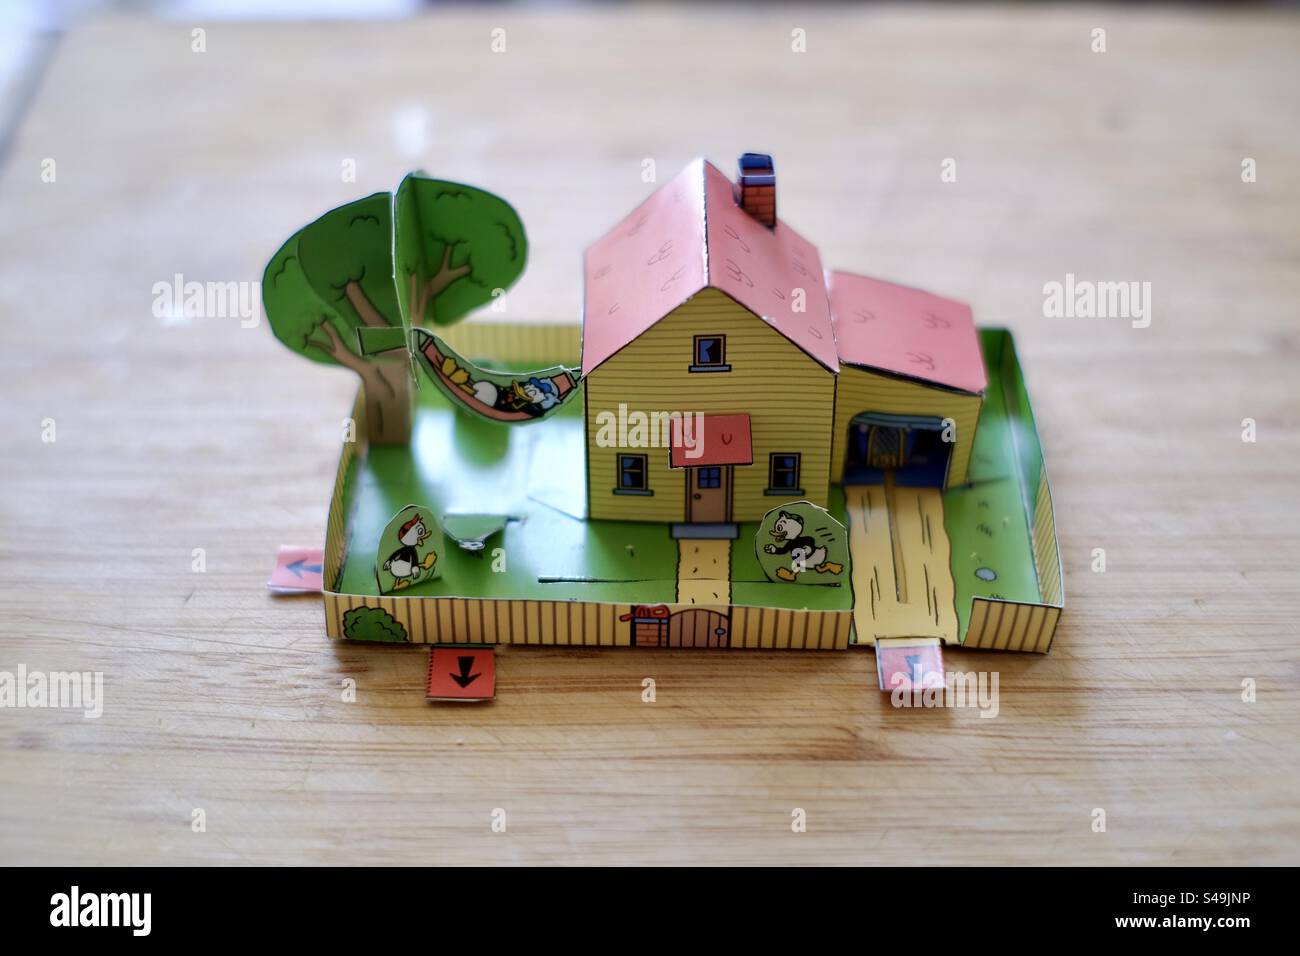 Foto ravvicinata di una casa ritagliata animata di carta o cartone e di un giardino per bambini che riposano su un tavolo di legno. Foto Stock